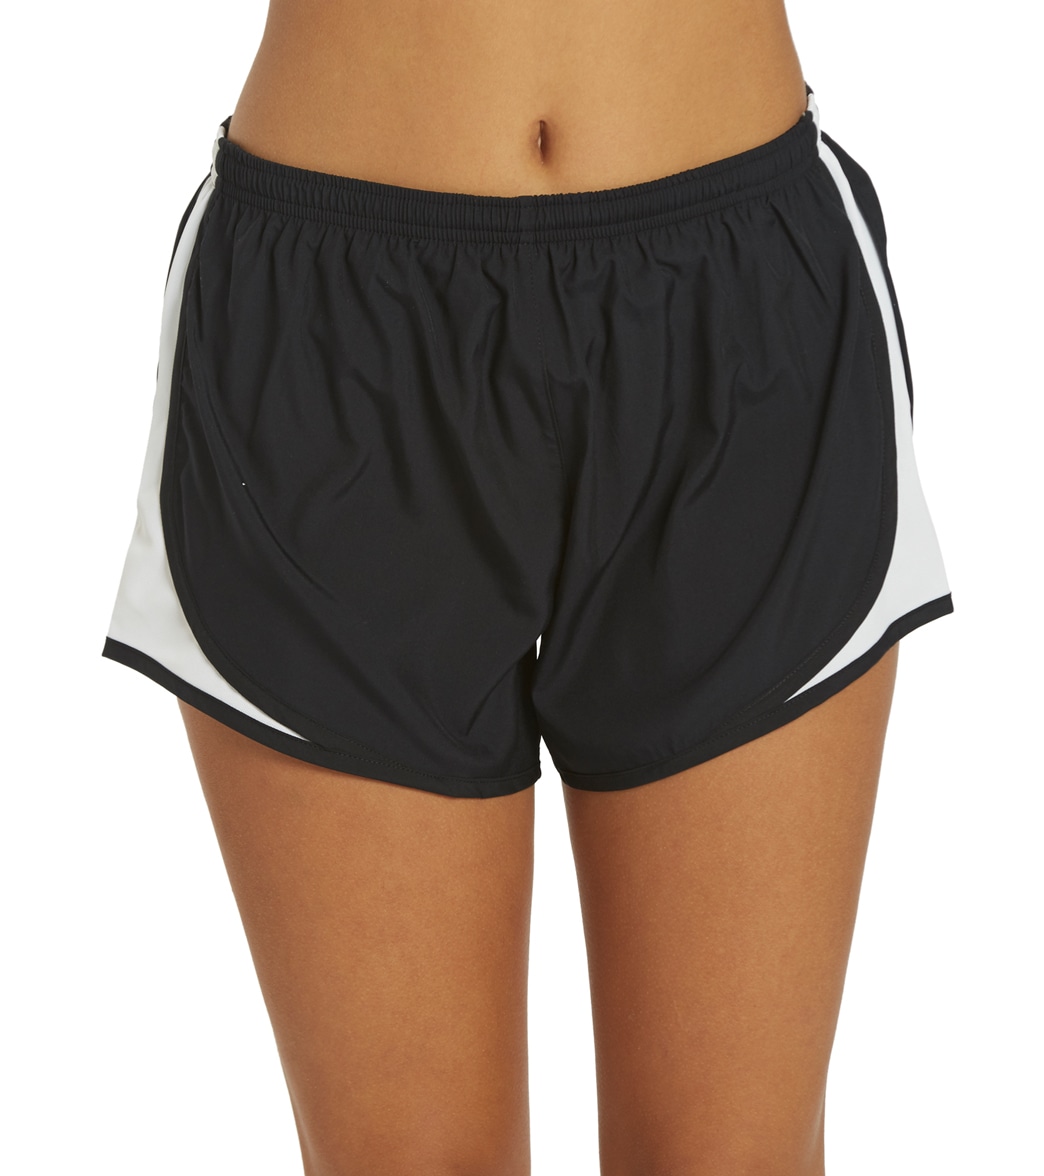 Women's Sport-Tek Cadence Short - Black/White/Black Medium Polyester - Swimoutlet.com